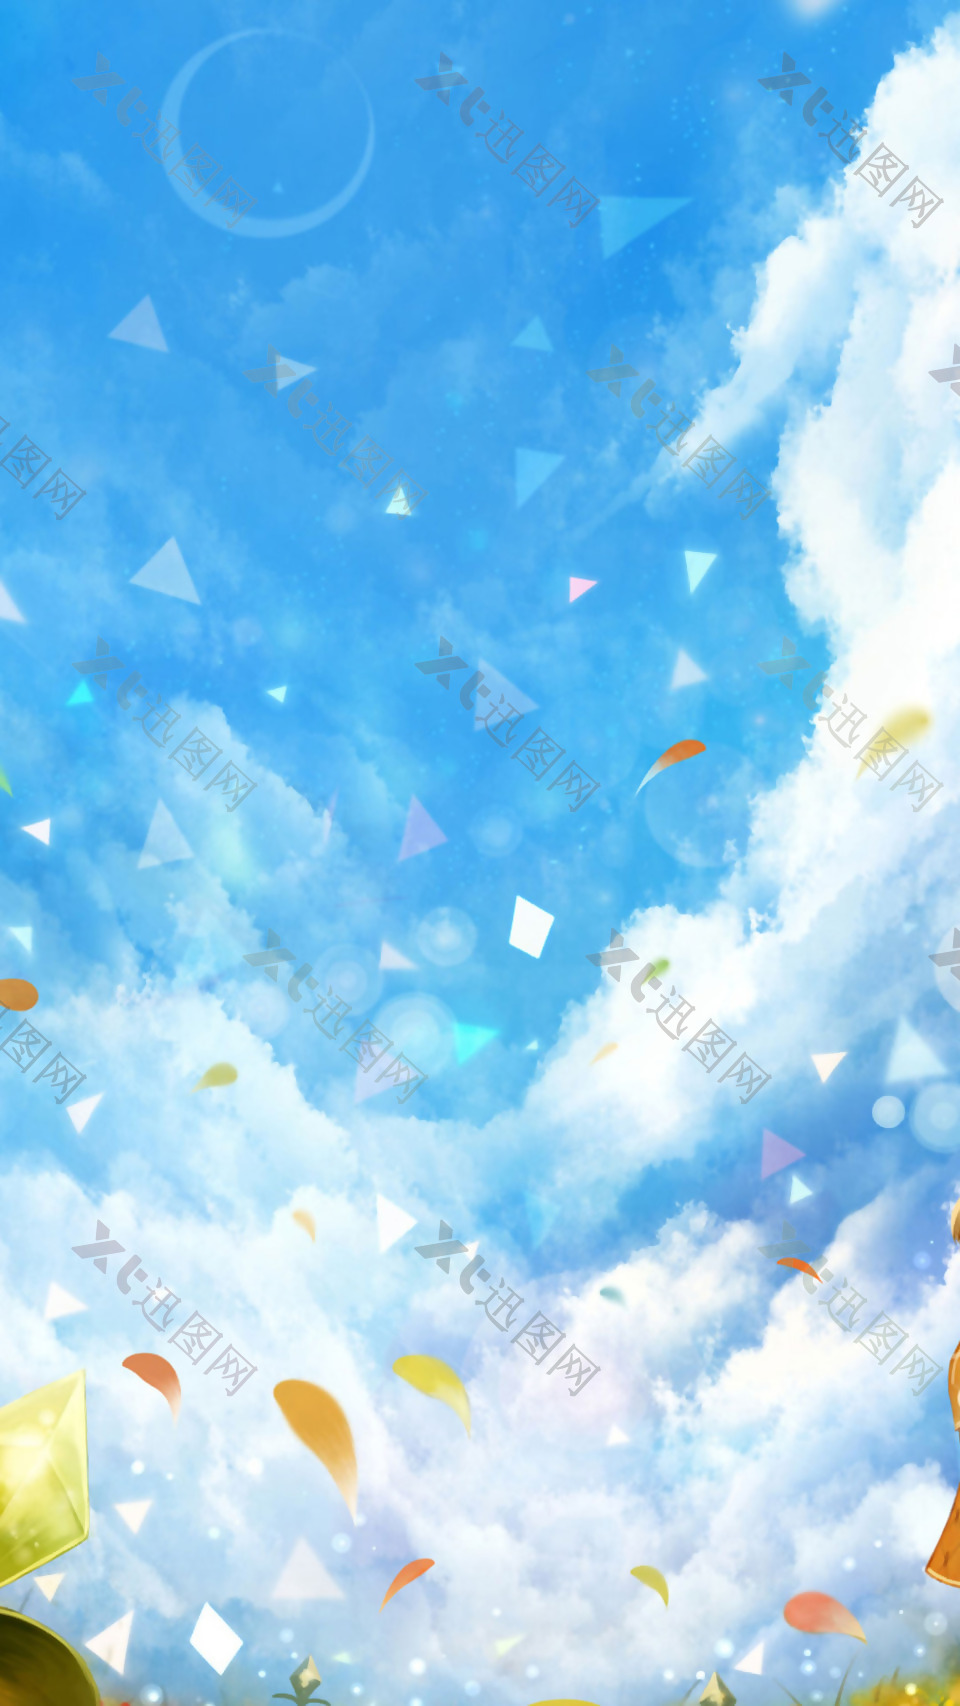 彩色树叶蓝天白云H5背景素材